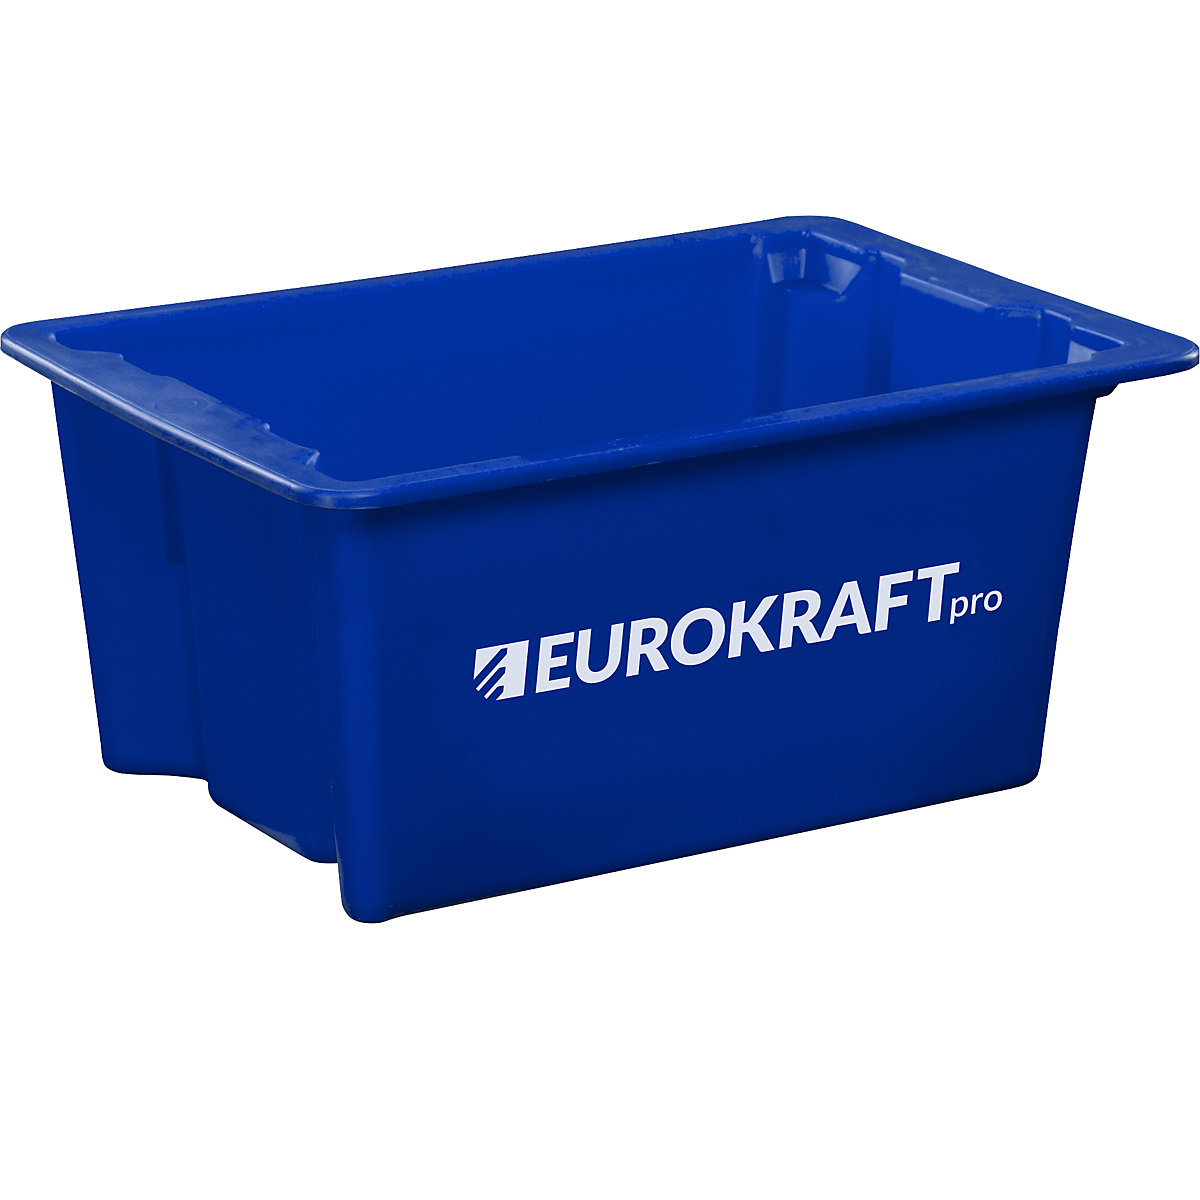 EUROKRAFTpro – Spremnik za slaganje od polipropilena pogodnog za kontakt s prehrambenim proizvodima, volumen 6 l, pak. 4 kom., zatvorene stijenke i dno, u plavoj boji